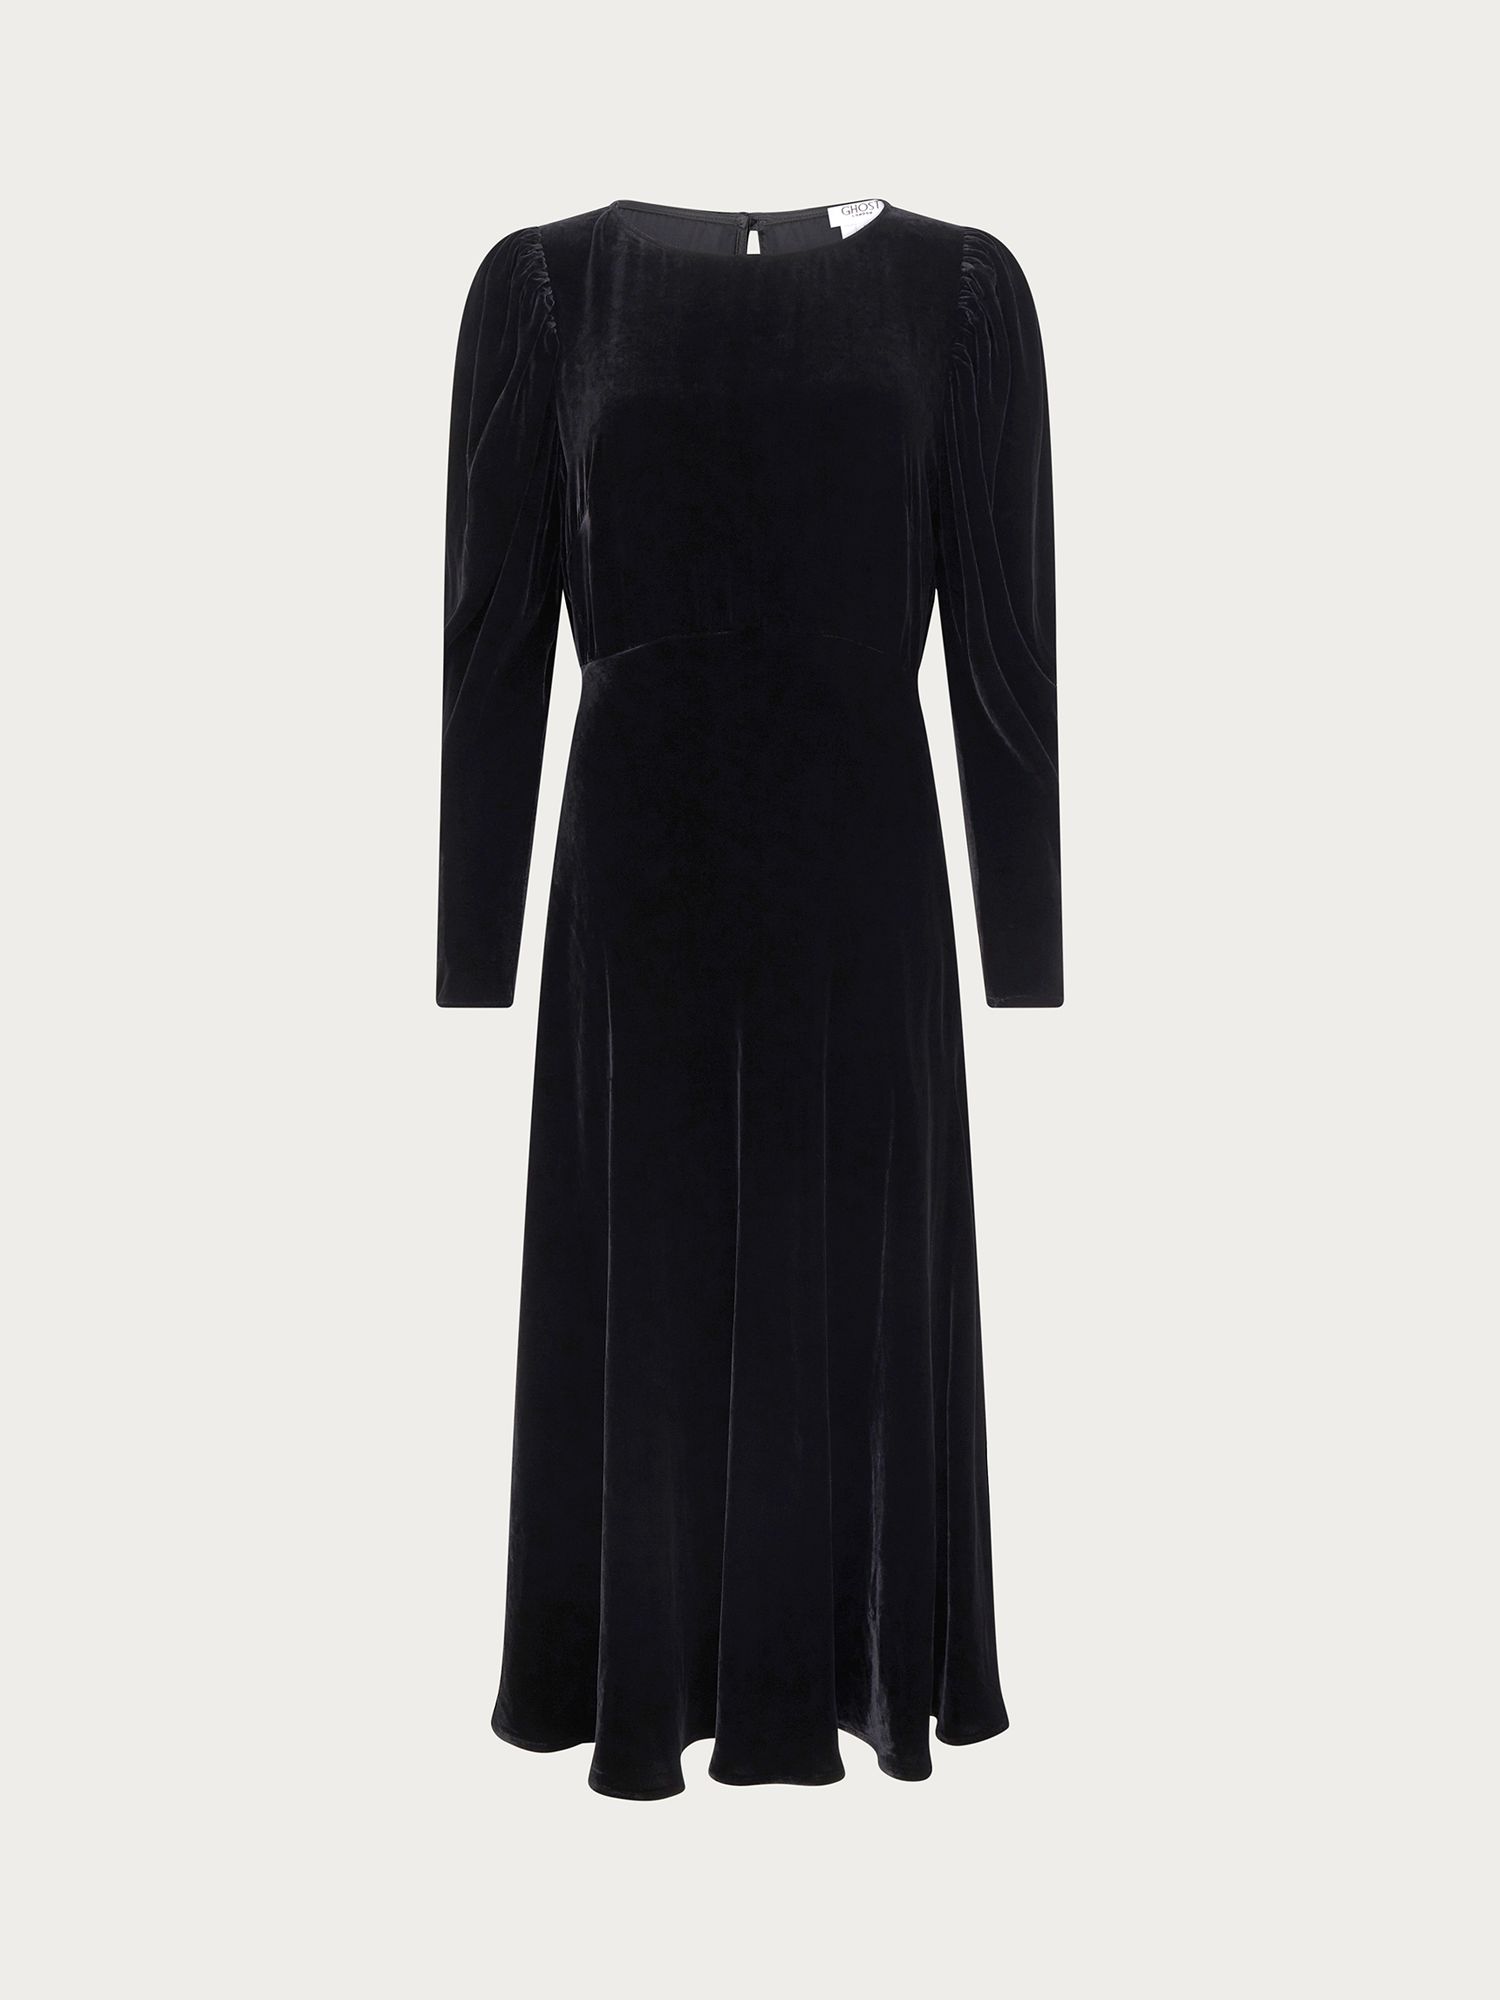 Ghost Rosaleen Velvet Dress, Black